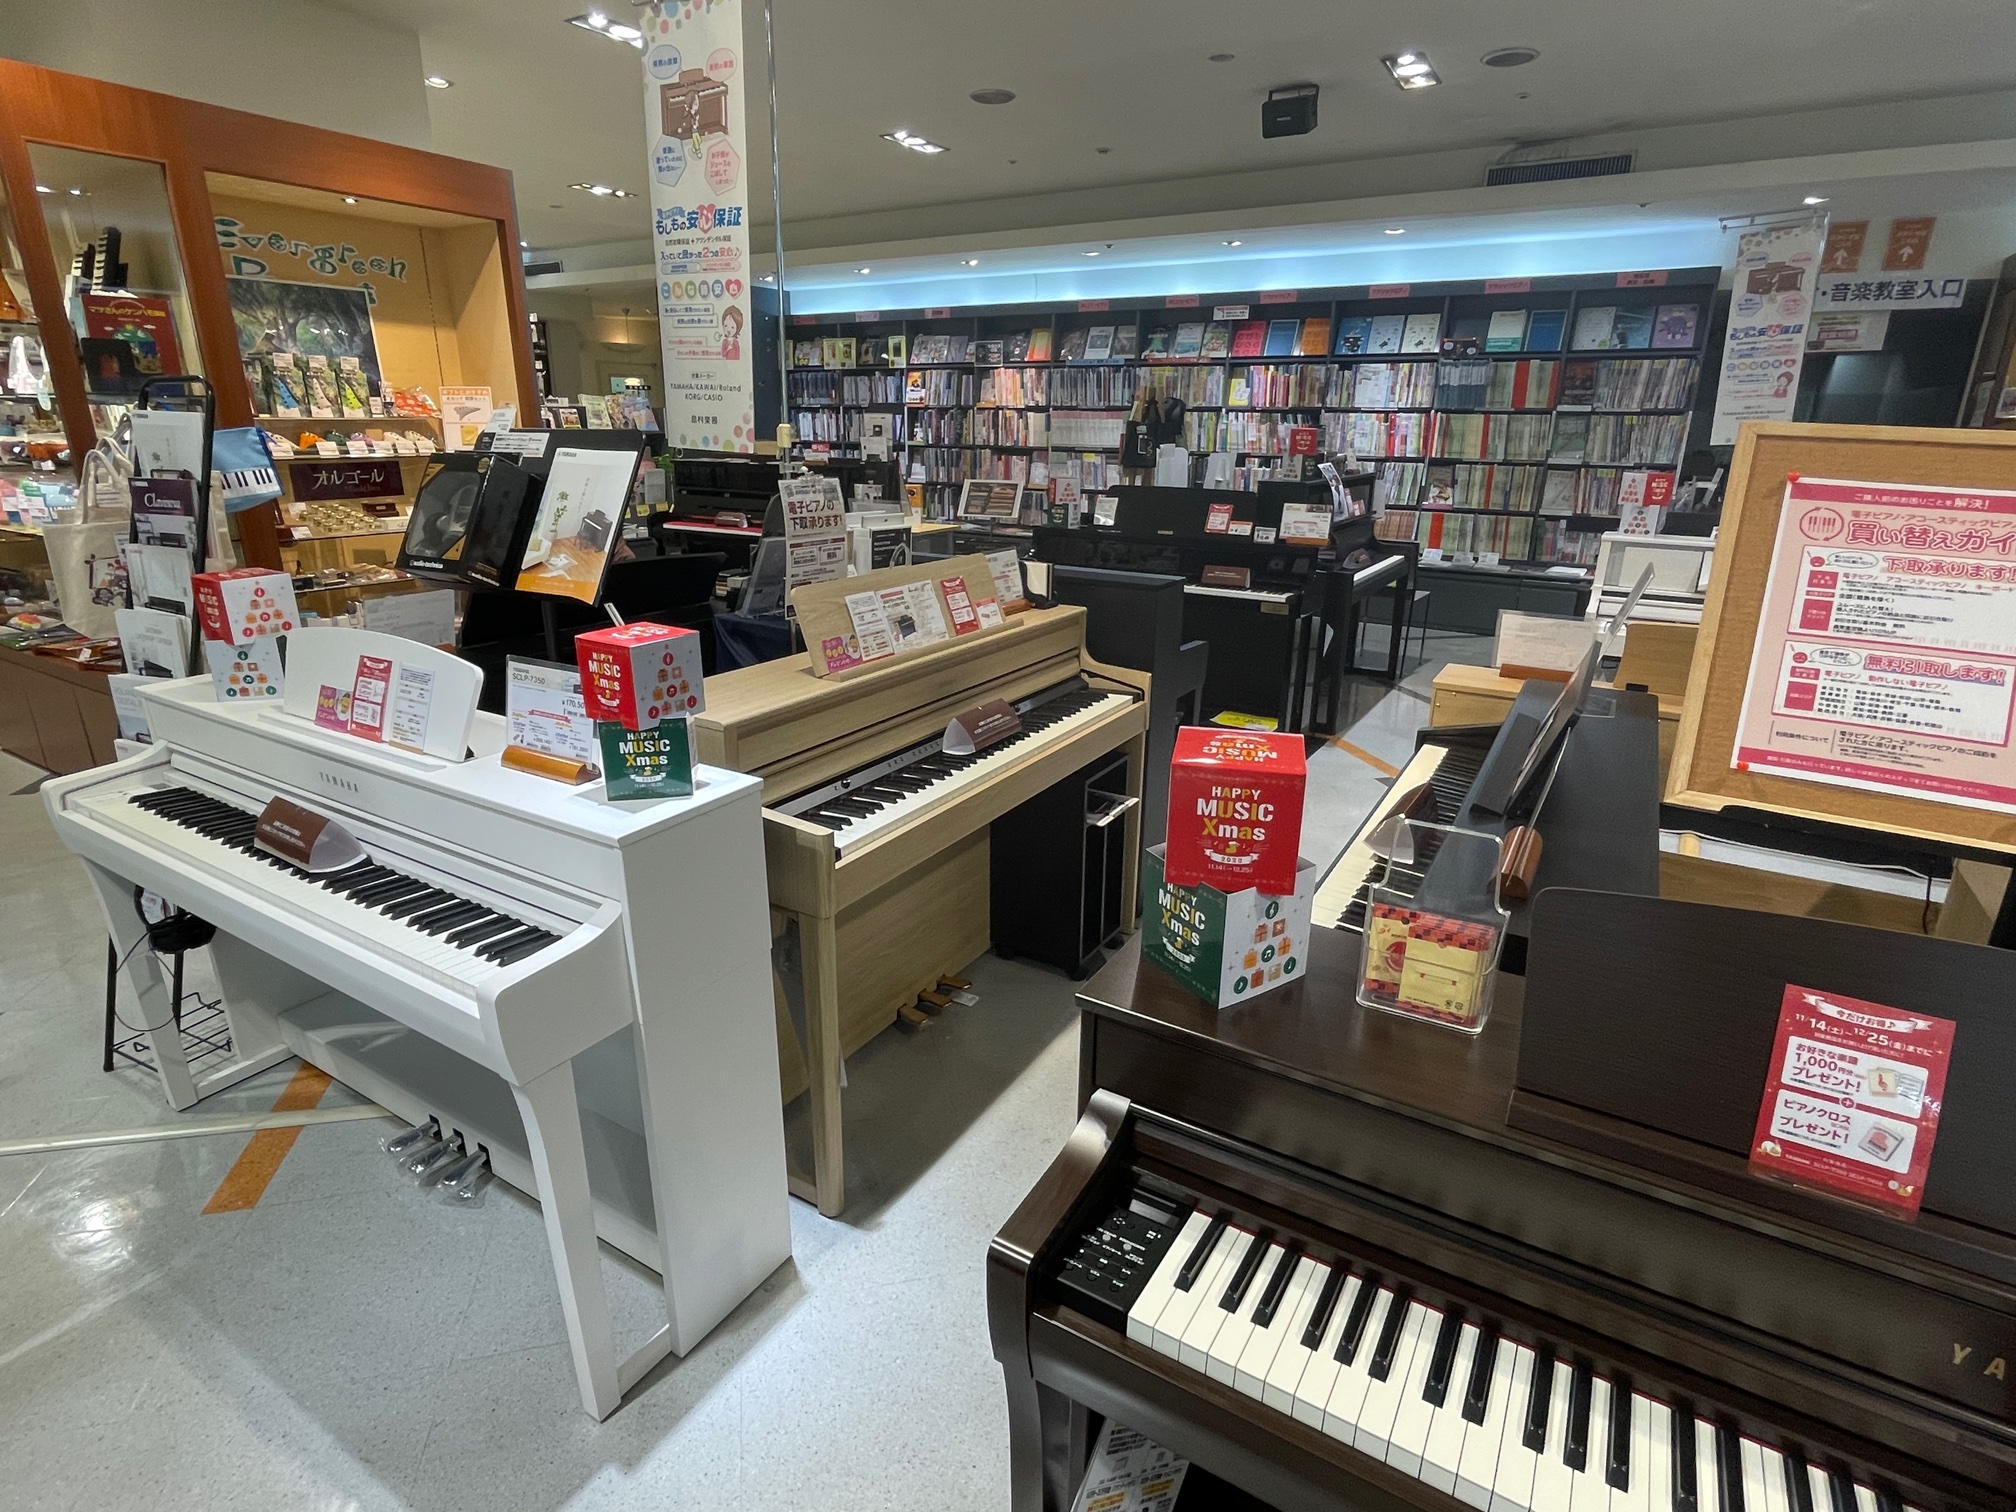 *電子ピアノご購入の方に嬉しい特典盛りだくさん！！ 現在水戸マイム店では電子ピアノフェアを開催しております！ご購入頂いた方には嬉しい特典がございます。お待ちしております！ **各種メーカの電子ピアノ展示中！！ ヤマハ・カワイ・ローランド・コルグ・カシオなど多数のメーカー展示ございます。 [https […]